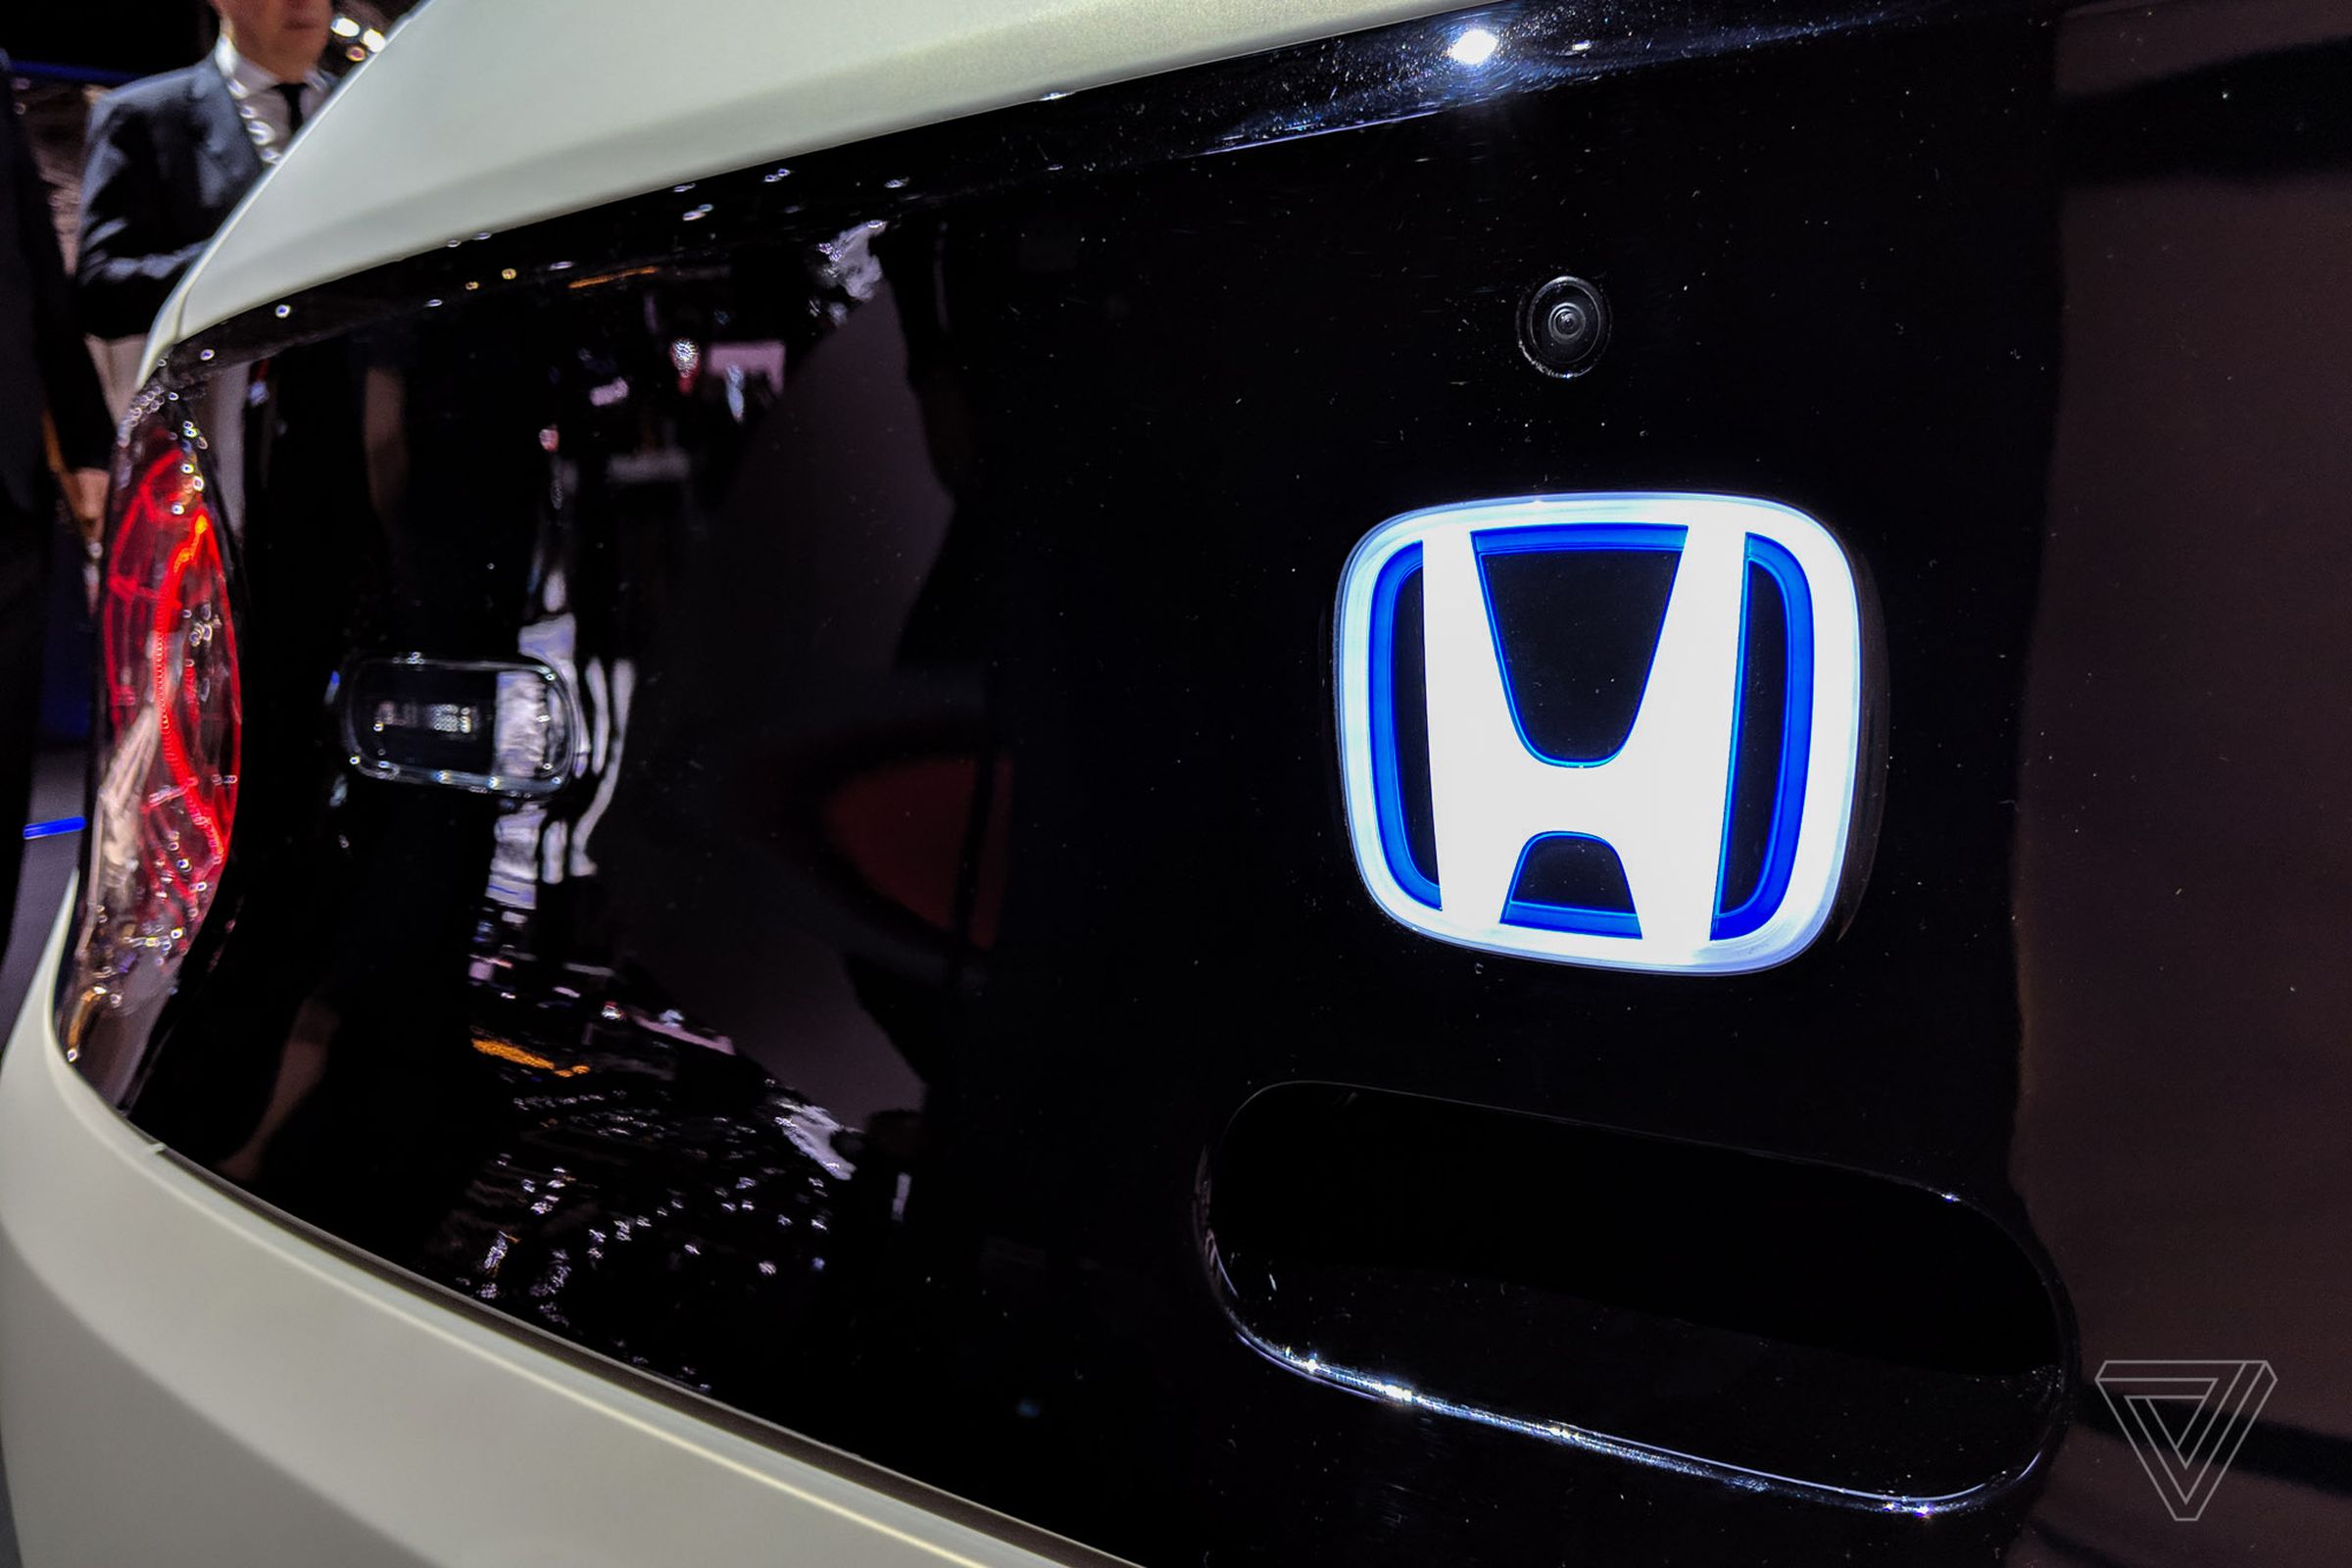 A lit-up Honda logo